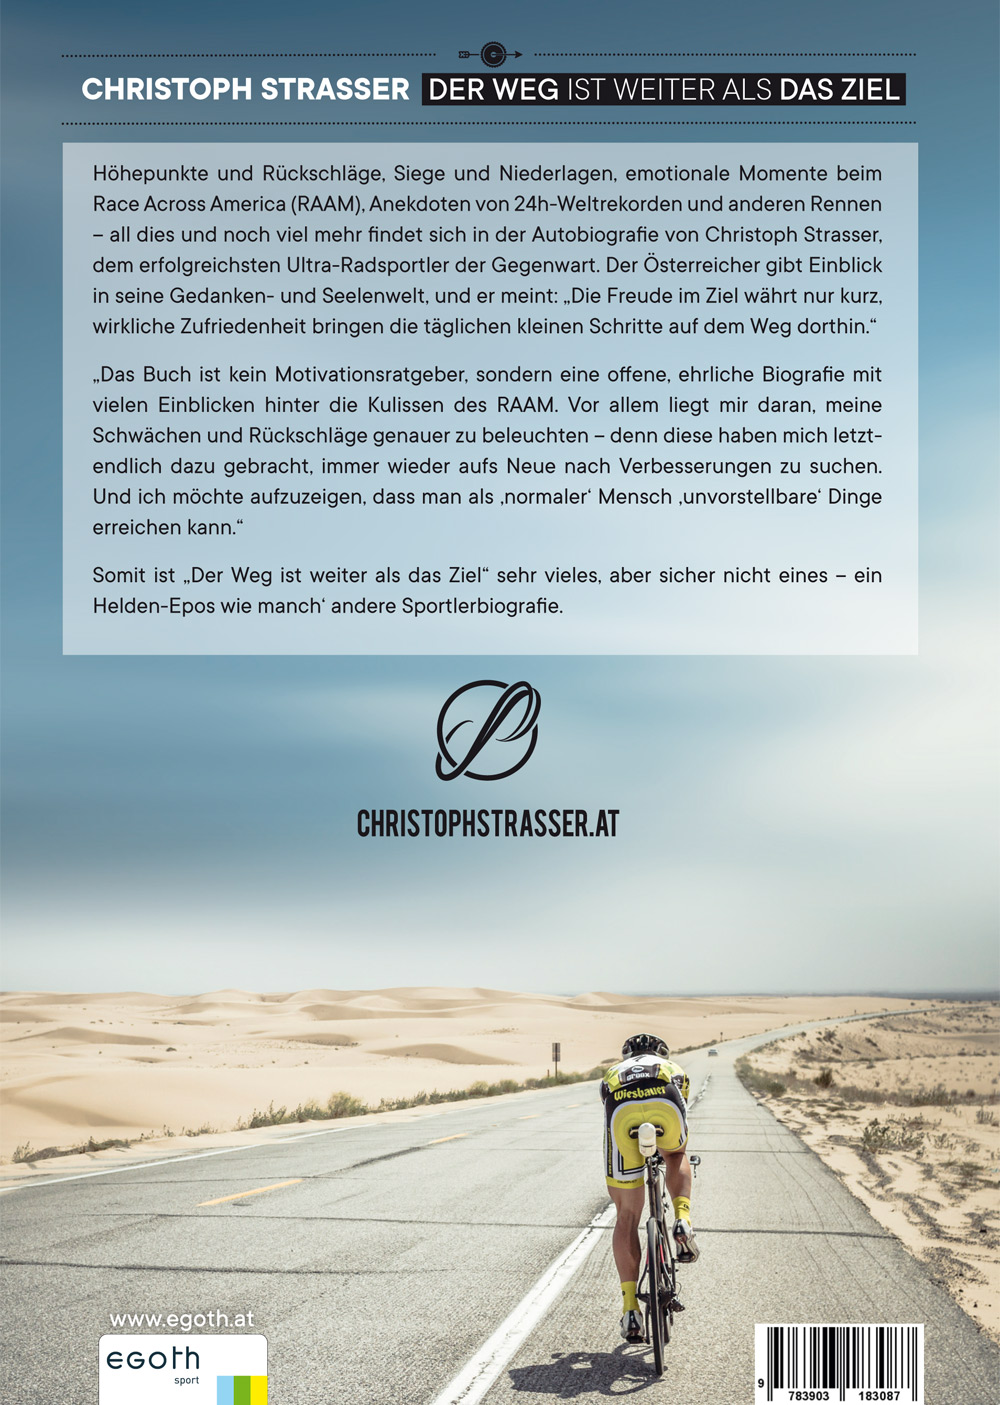 "KRUMMES DING" - Buch "Der Weg ist weiter als das Ziel" - von Christoph Strasser 